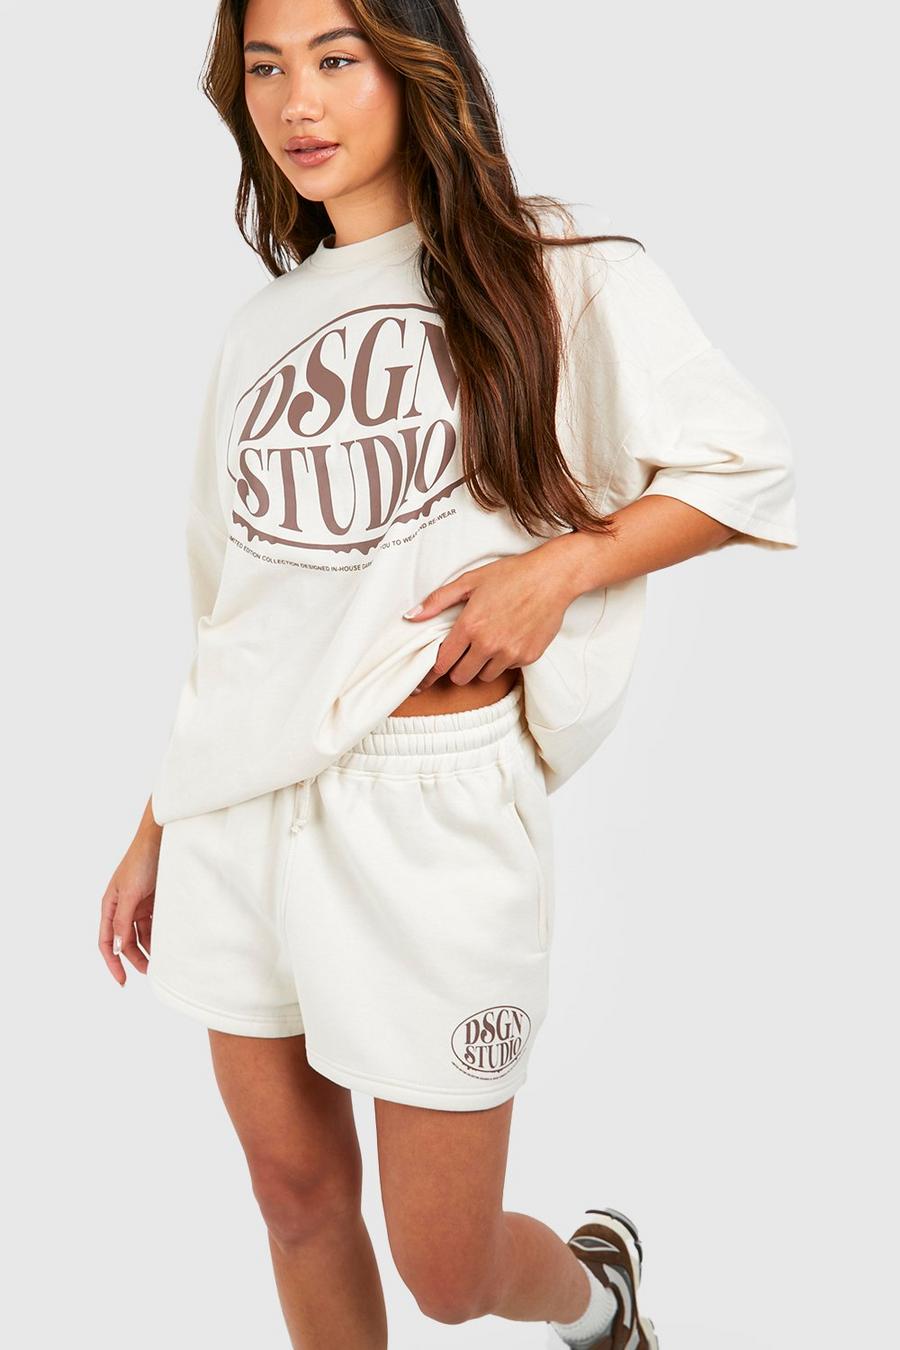 Conjunto de pantalón corto y camiseta con eslogan Dsgn Studio, Stone